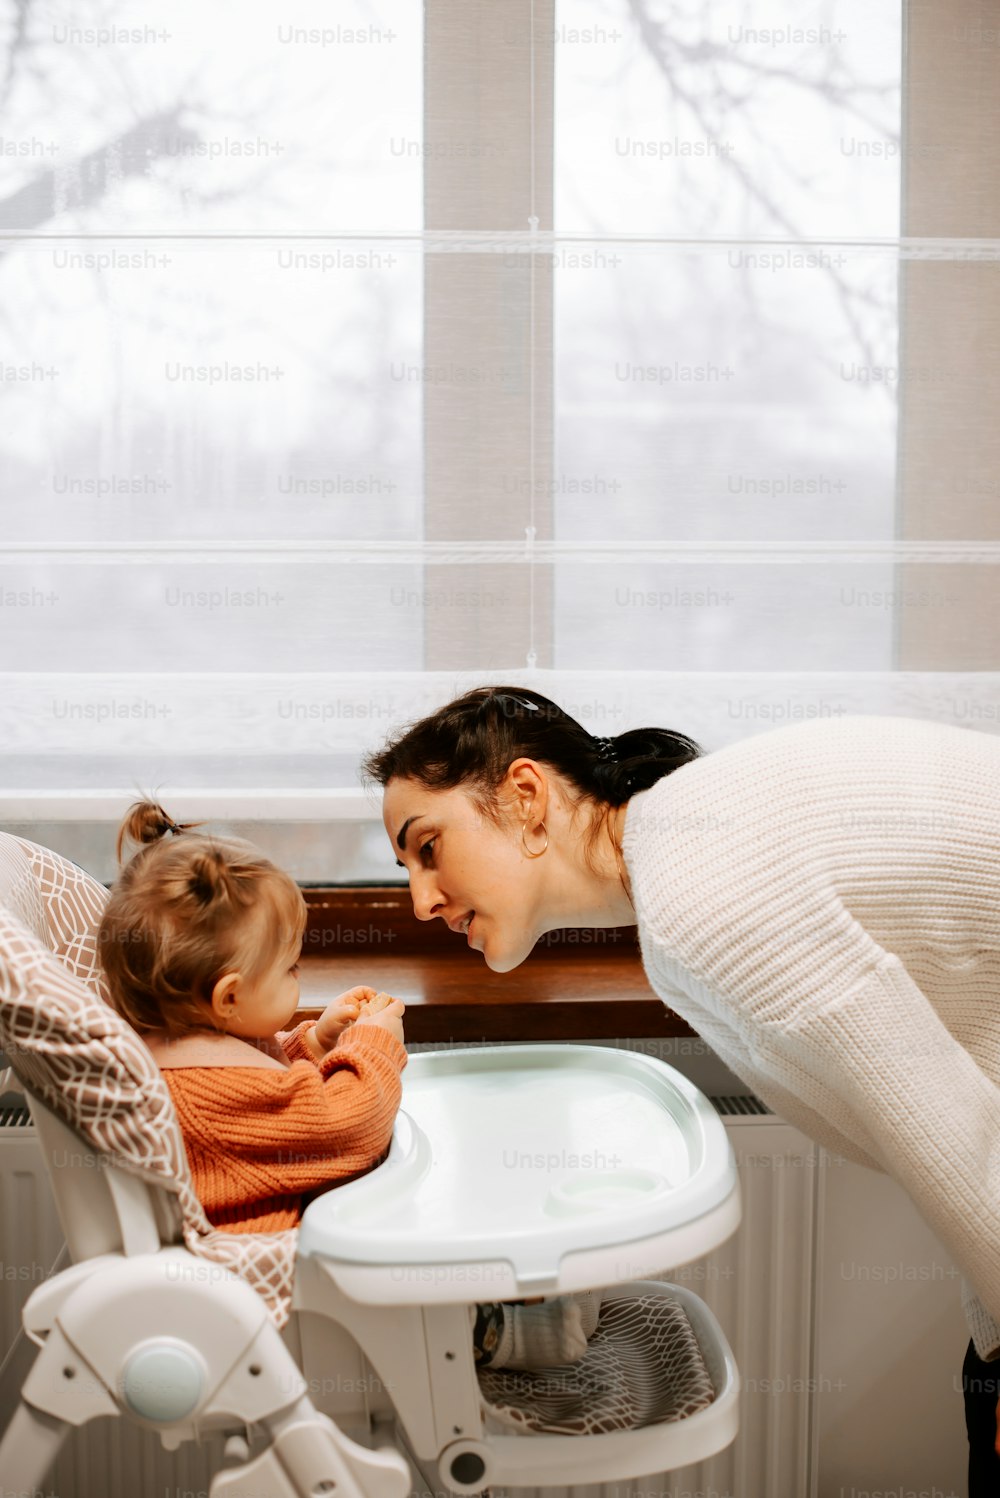 Eine Frau und ein Kind in einer Badewanne